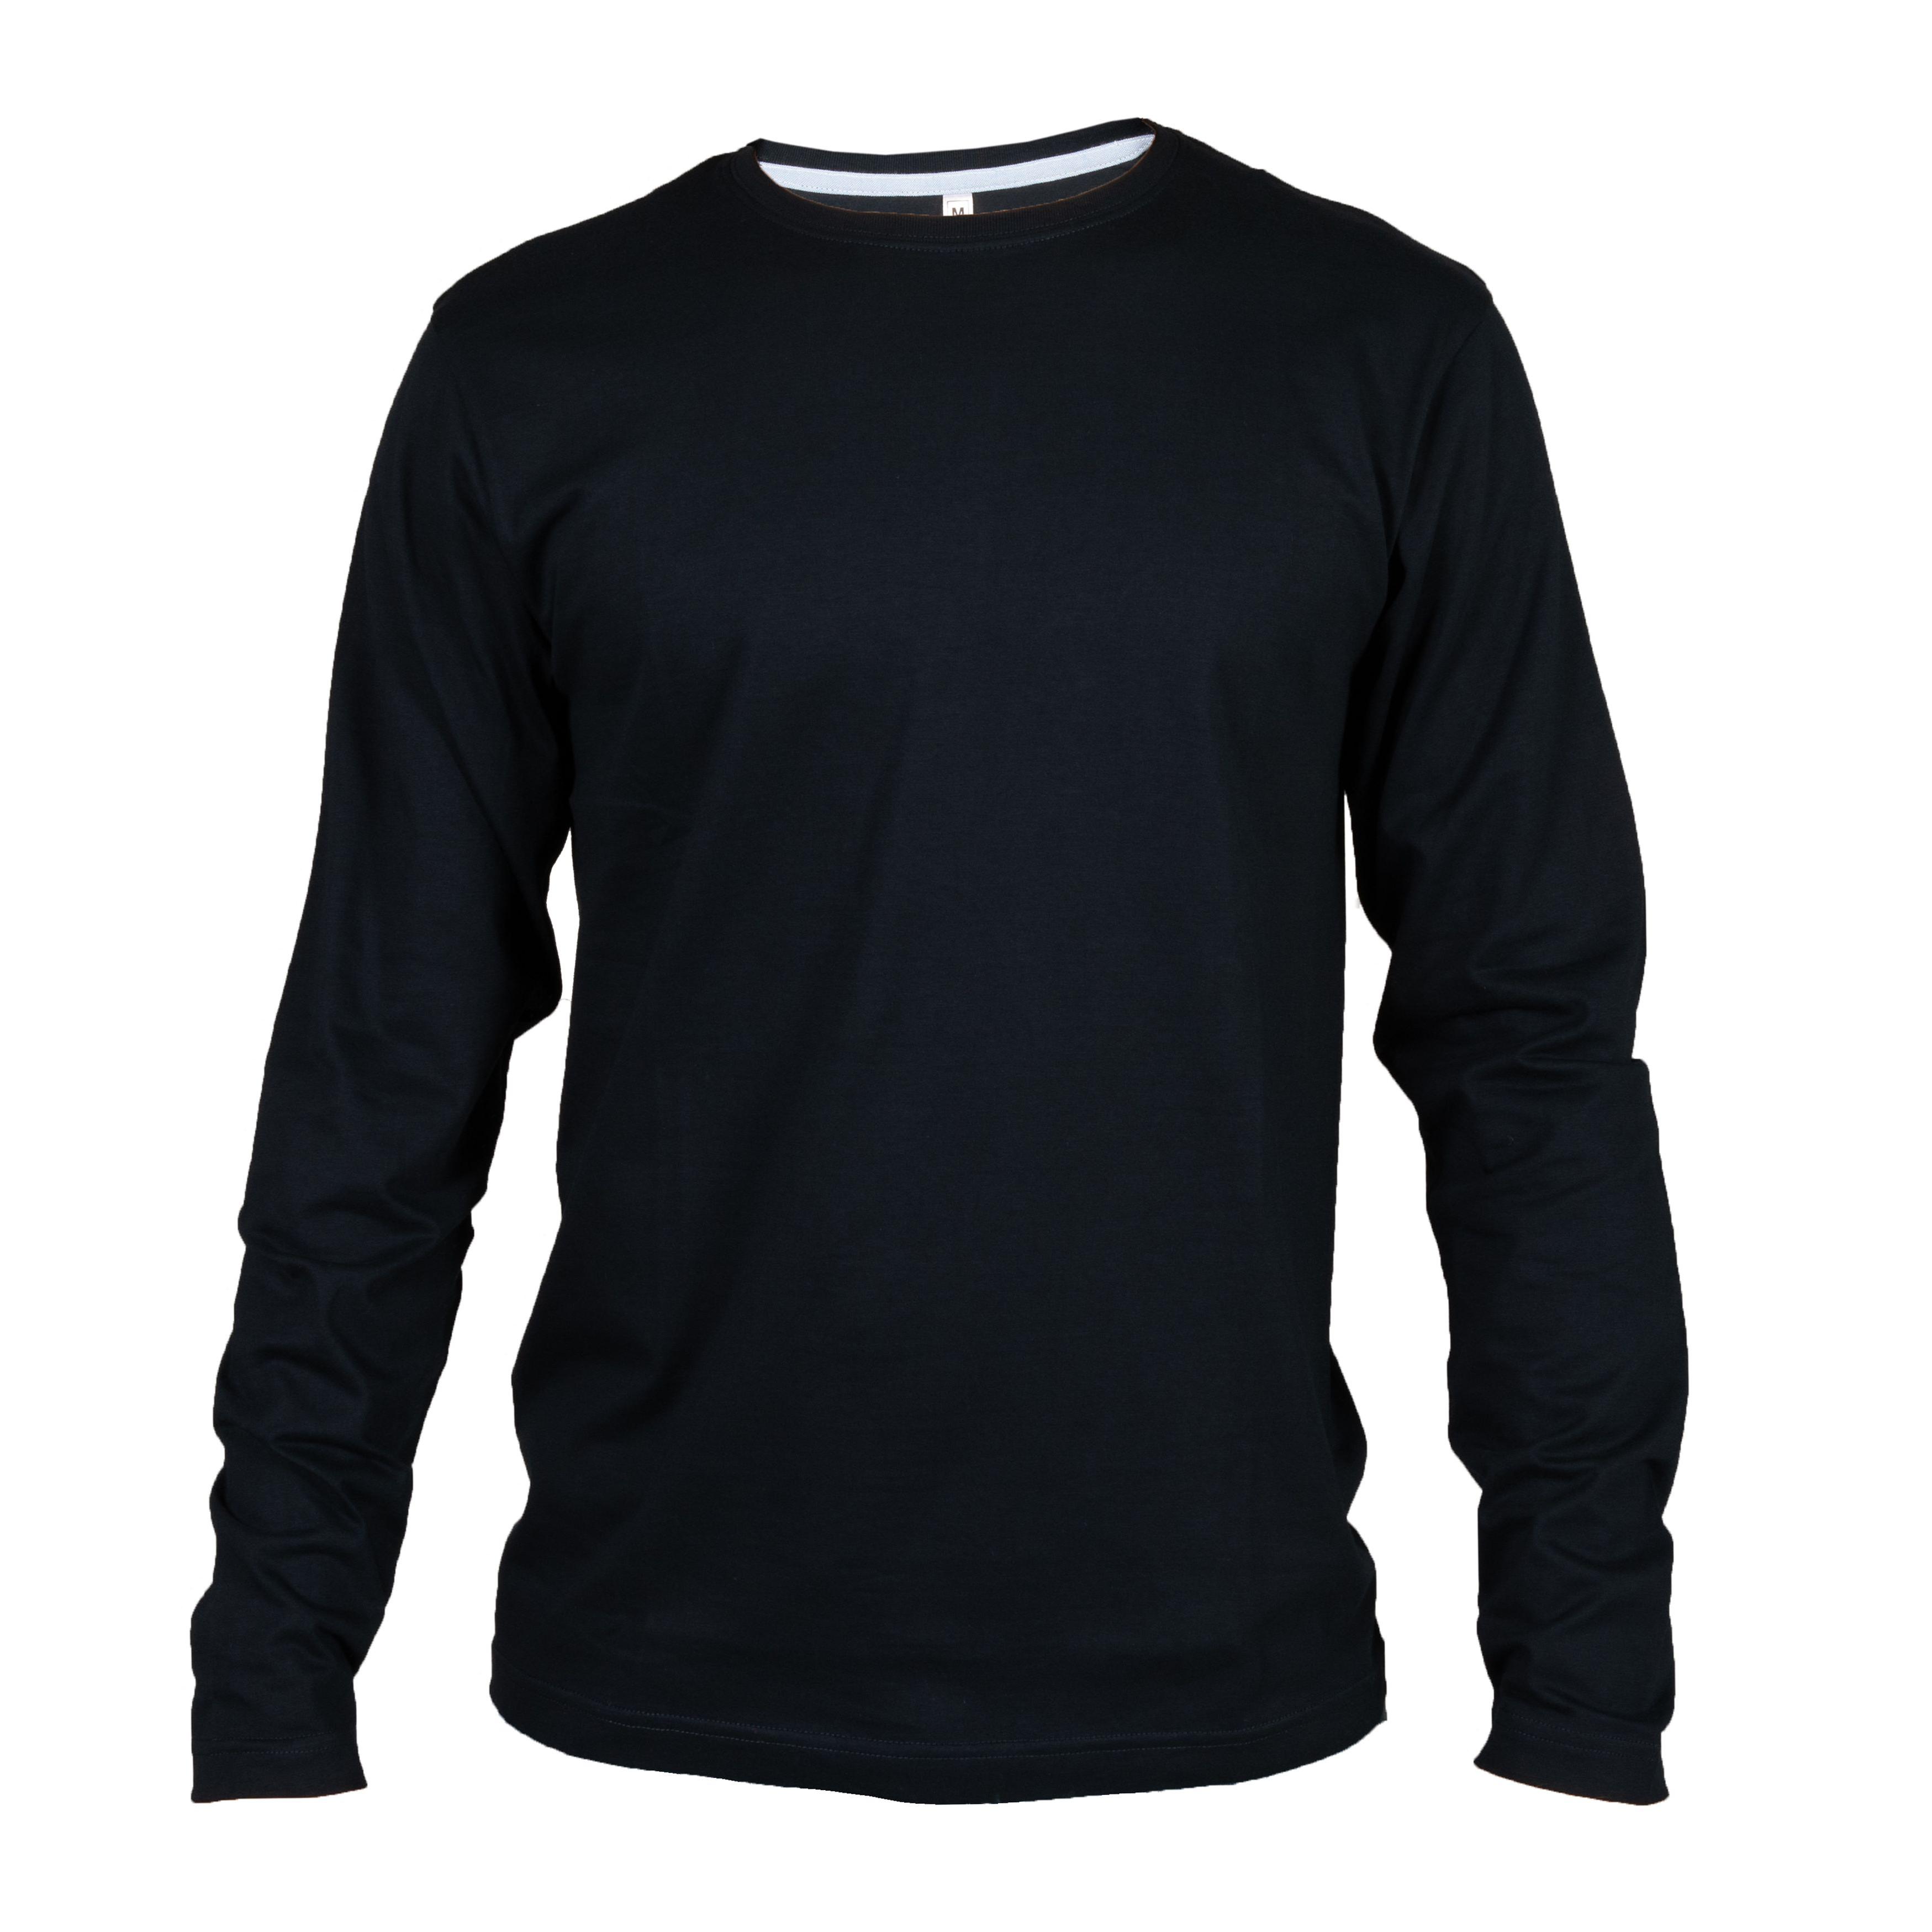 T-Shirt James Ross Giamaica Man 99465, qualit e garanzia